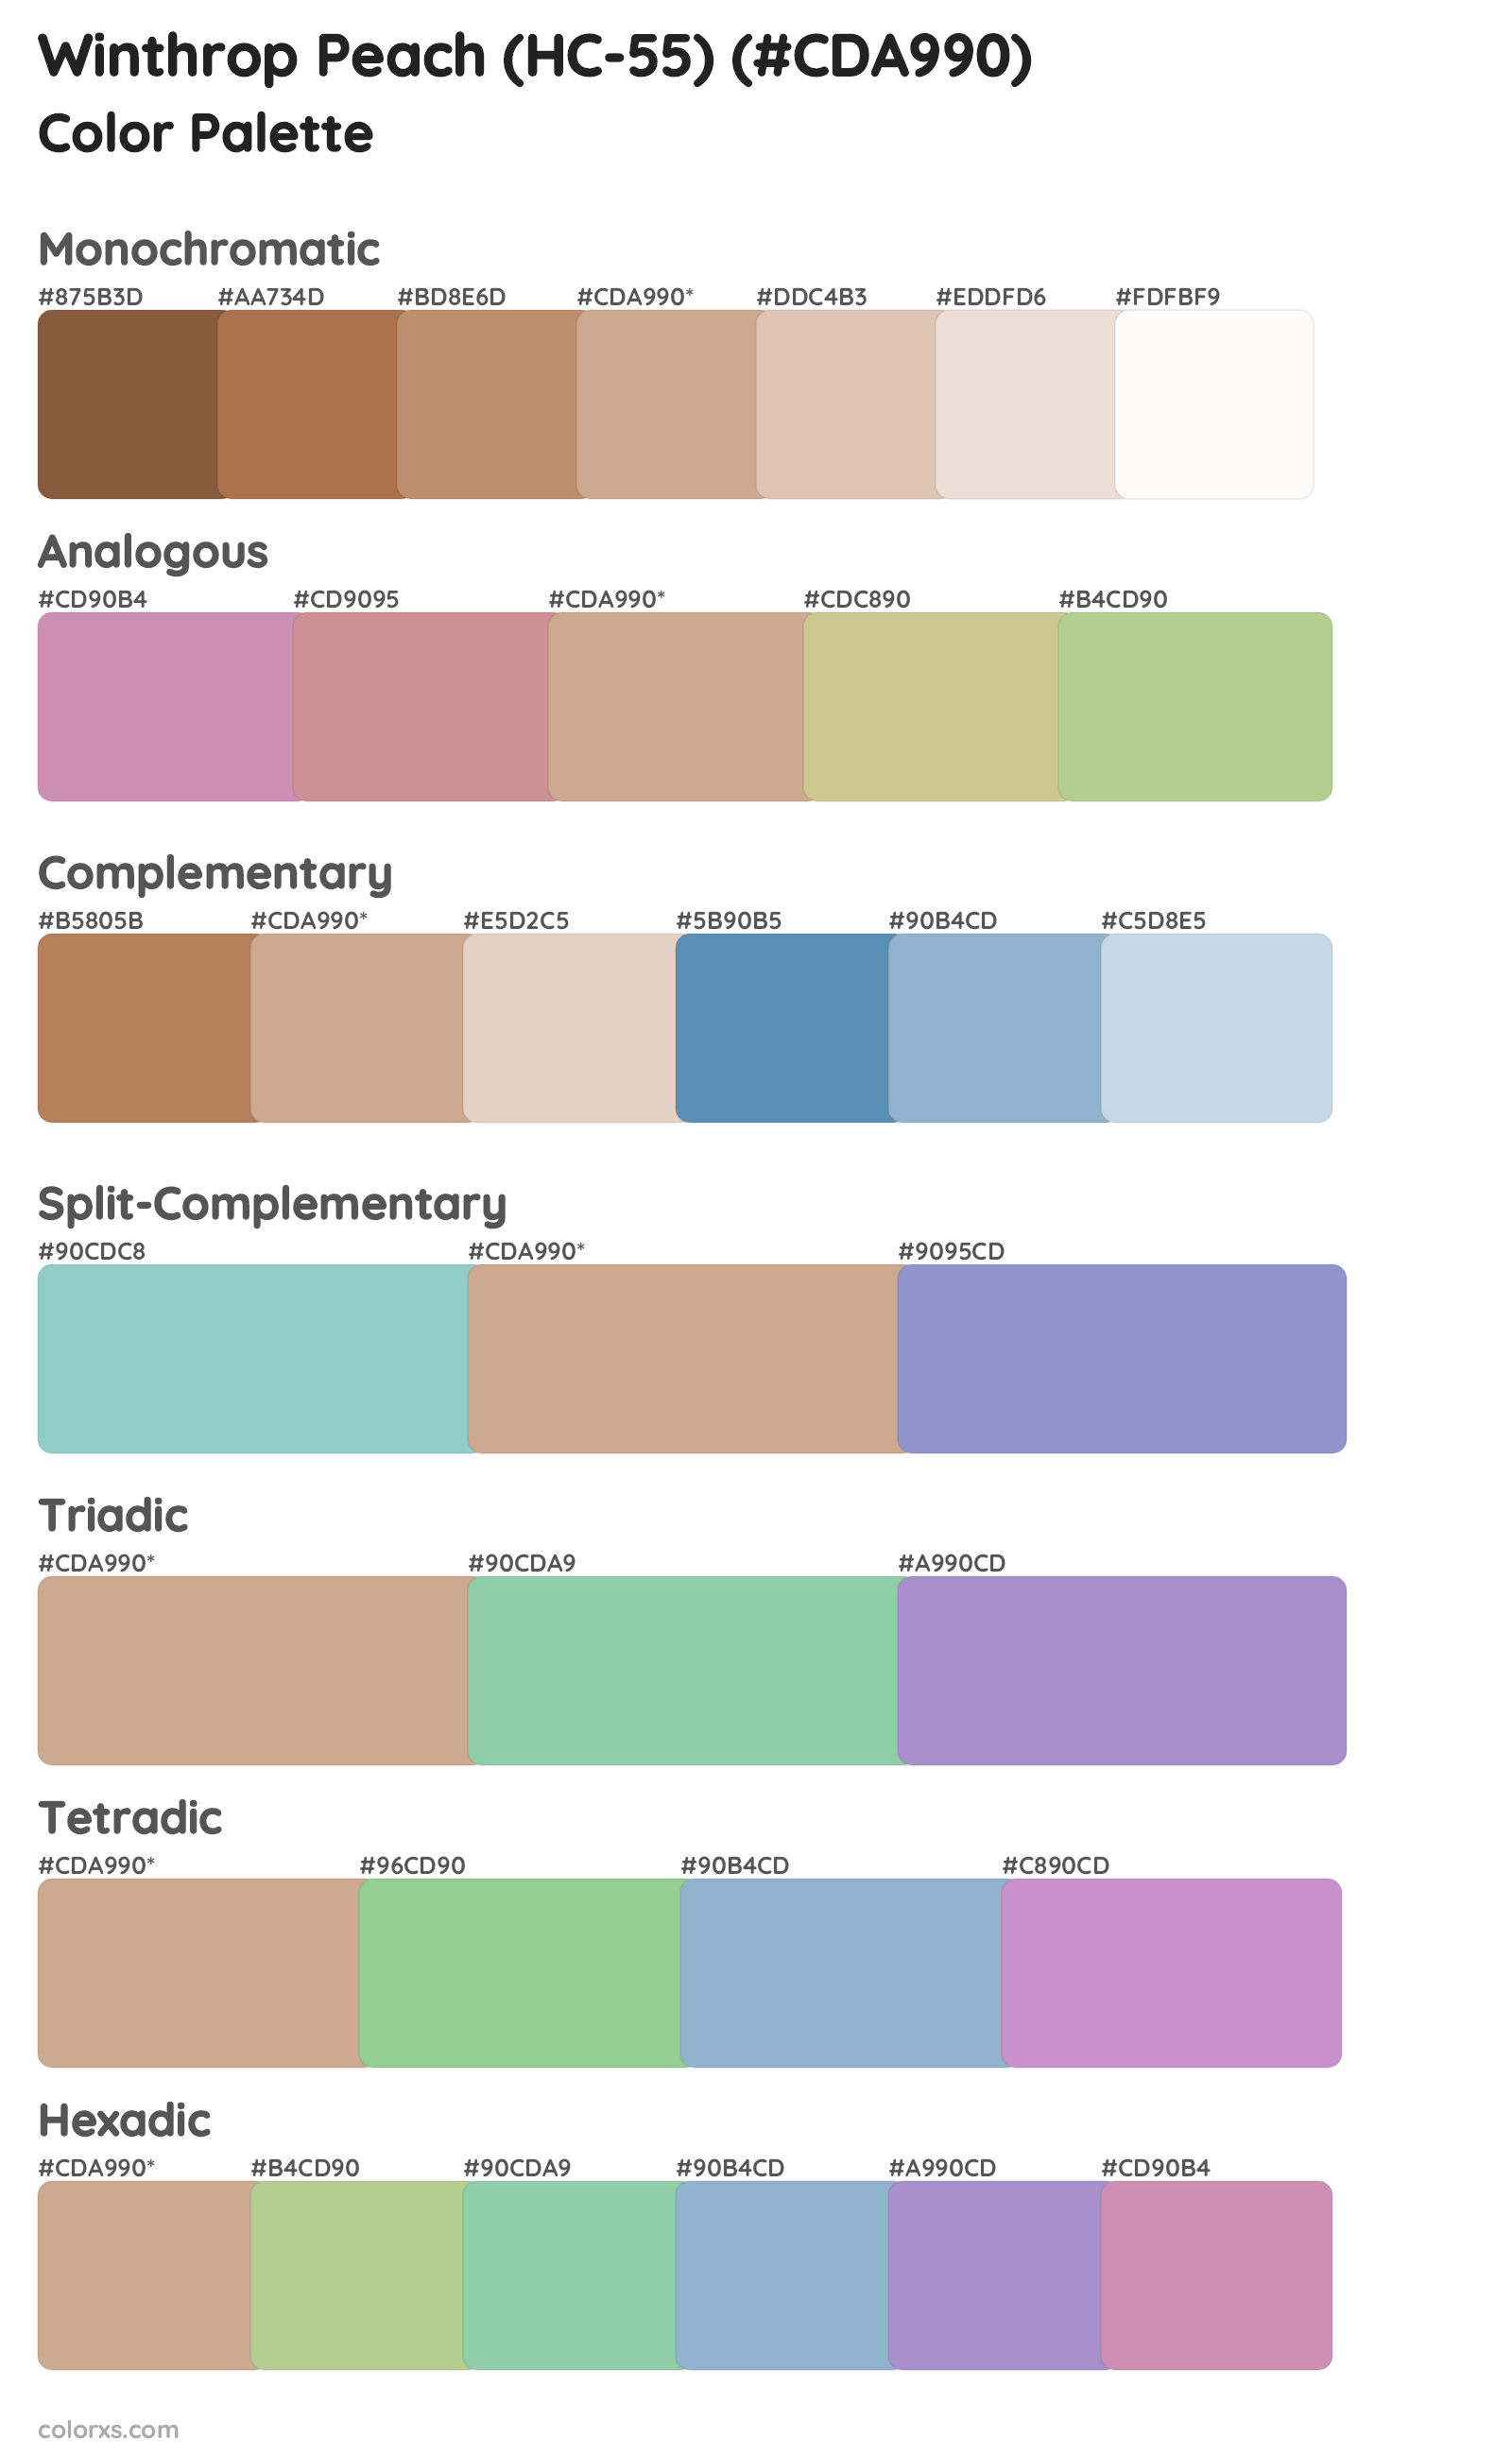 Winthrop Peach (HC-55) Color Scheme Palettes